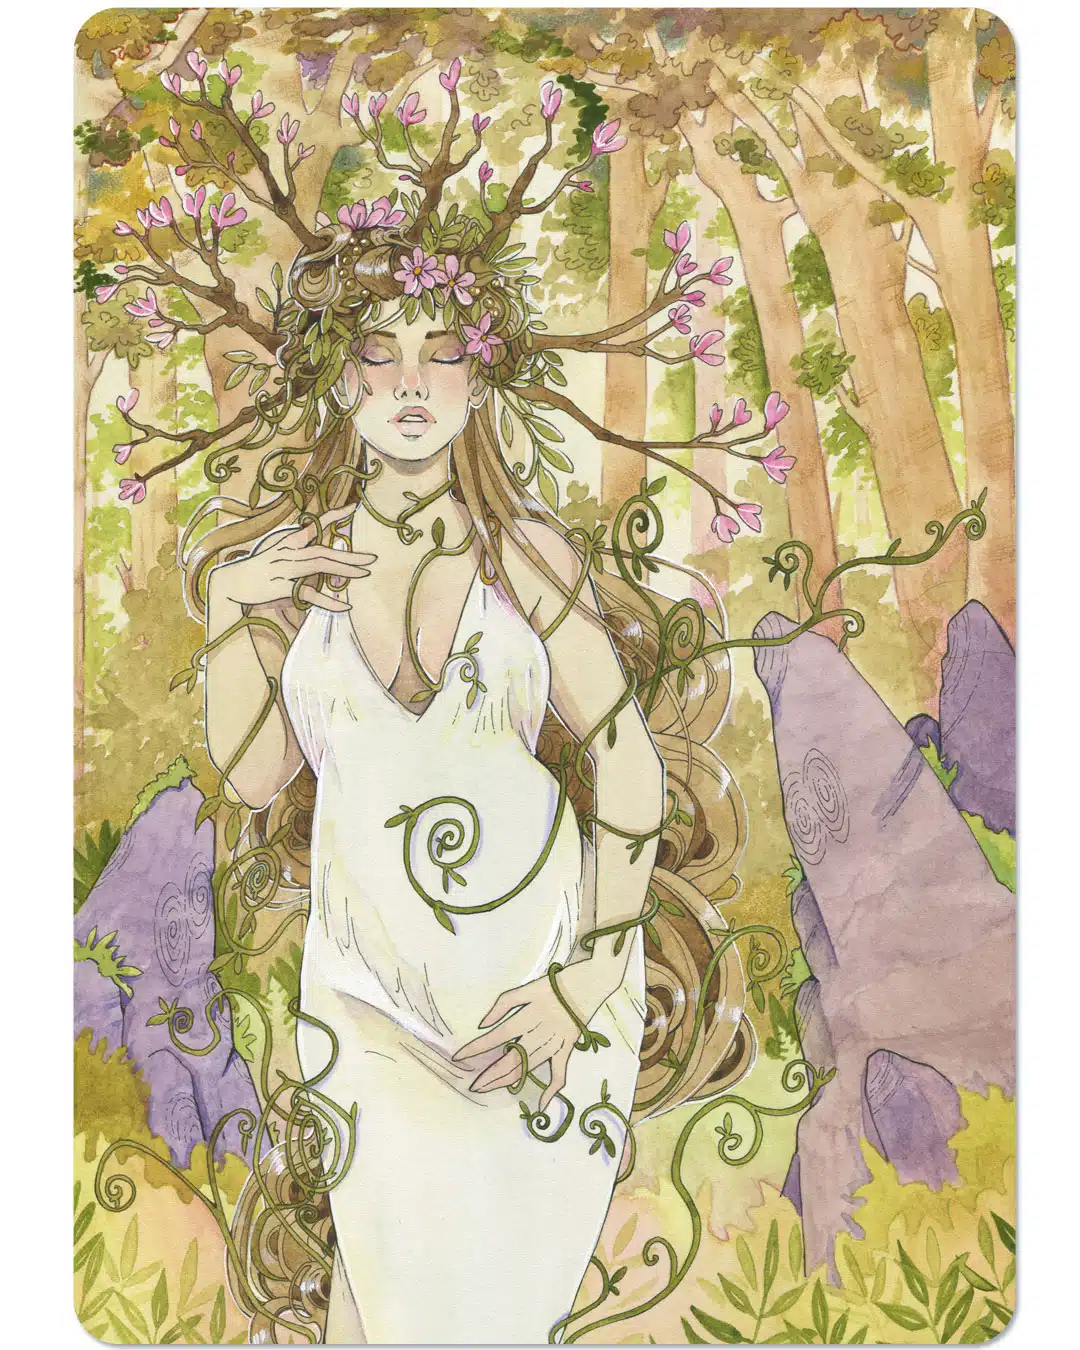 Une carte d'oracle représentant une femme enceinte, les yeux fermés, dans la forêt. Des branches forment une couronne autour de sa tête.